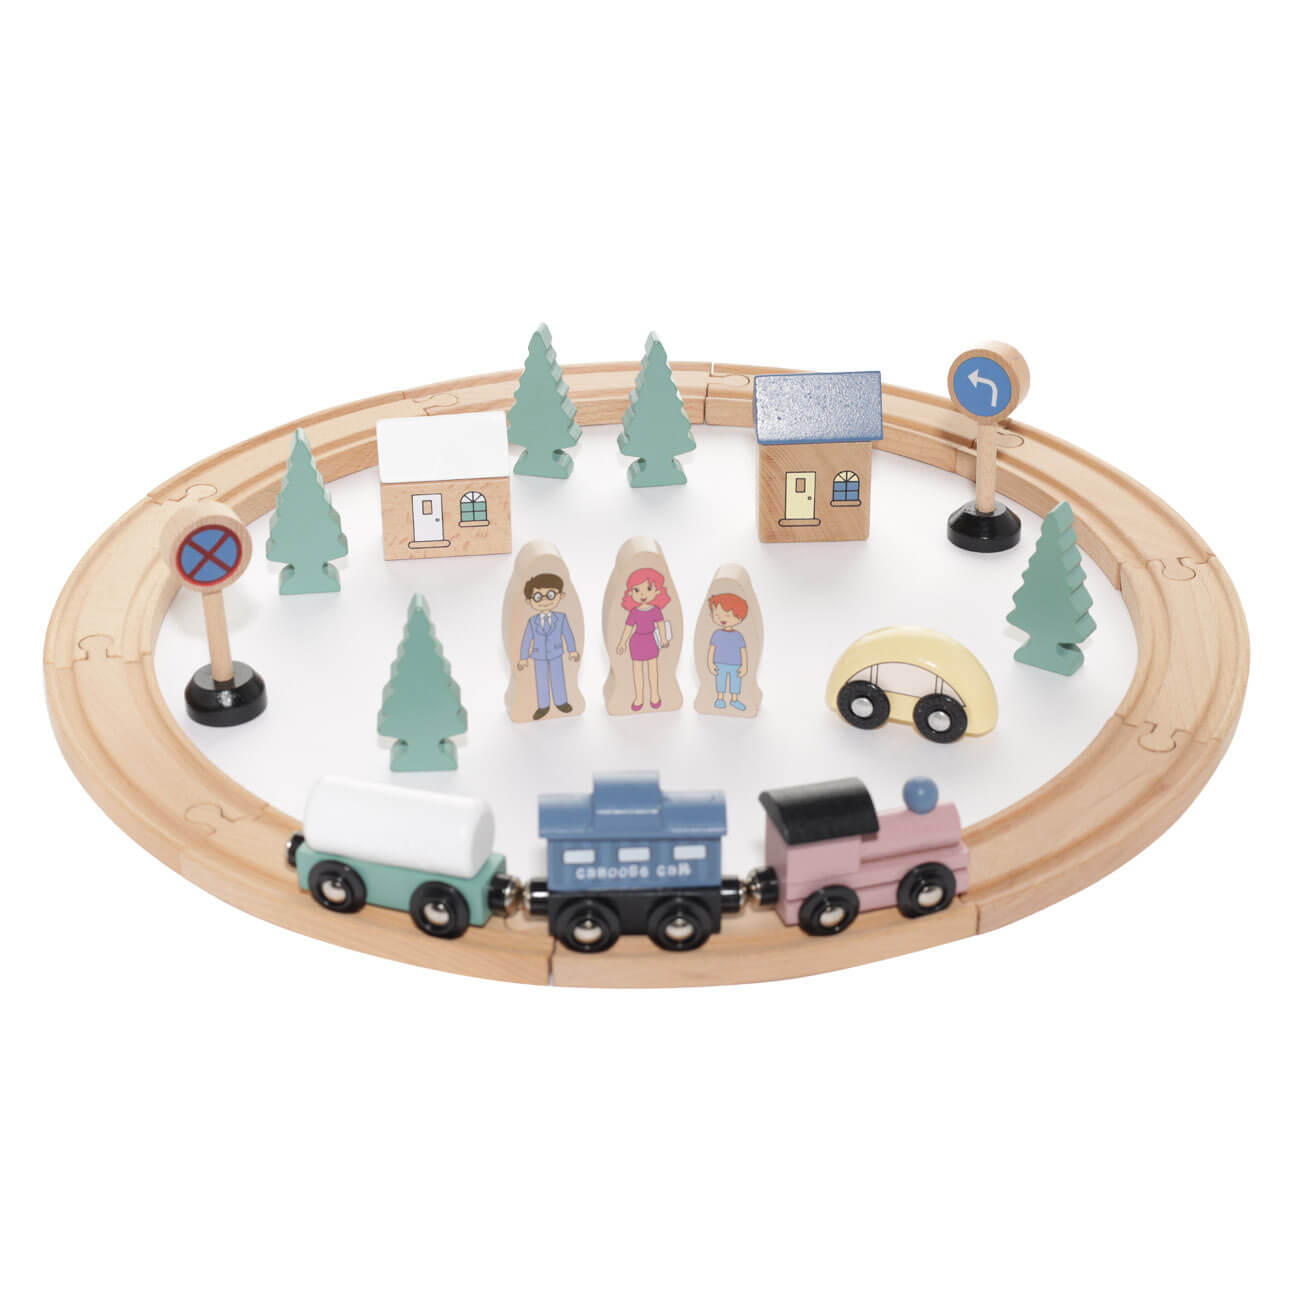 Железная дорога игрушечная, 28 см, дерево, Город, Game железная дорога mehano tgv ouigo